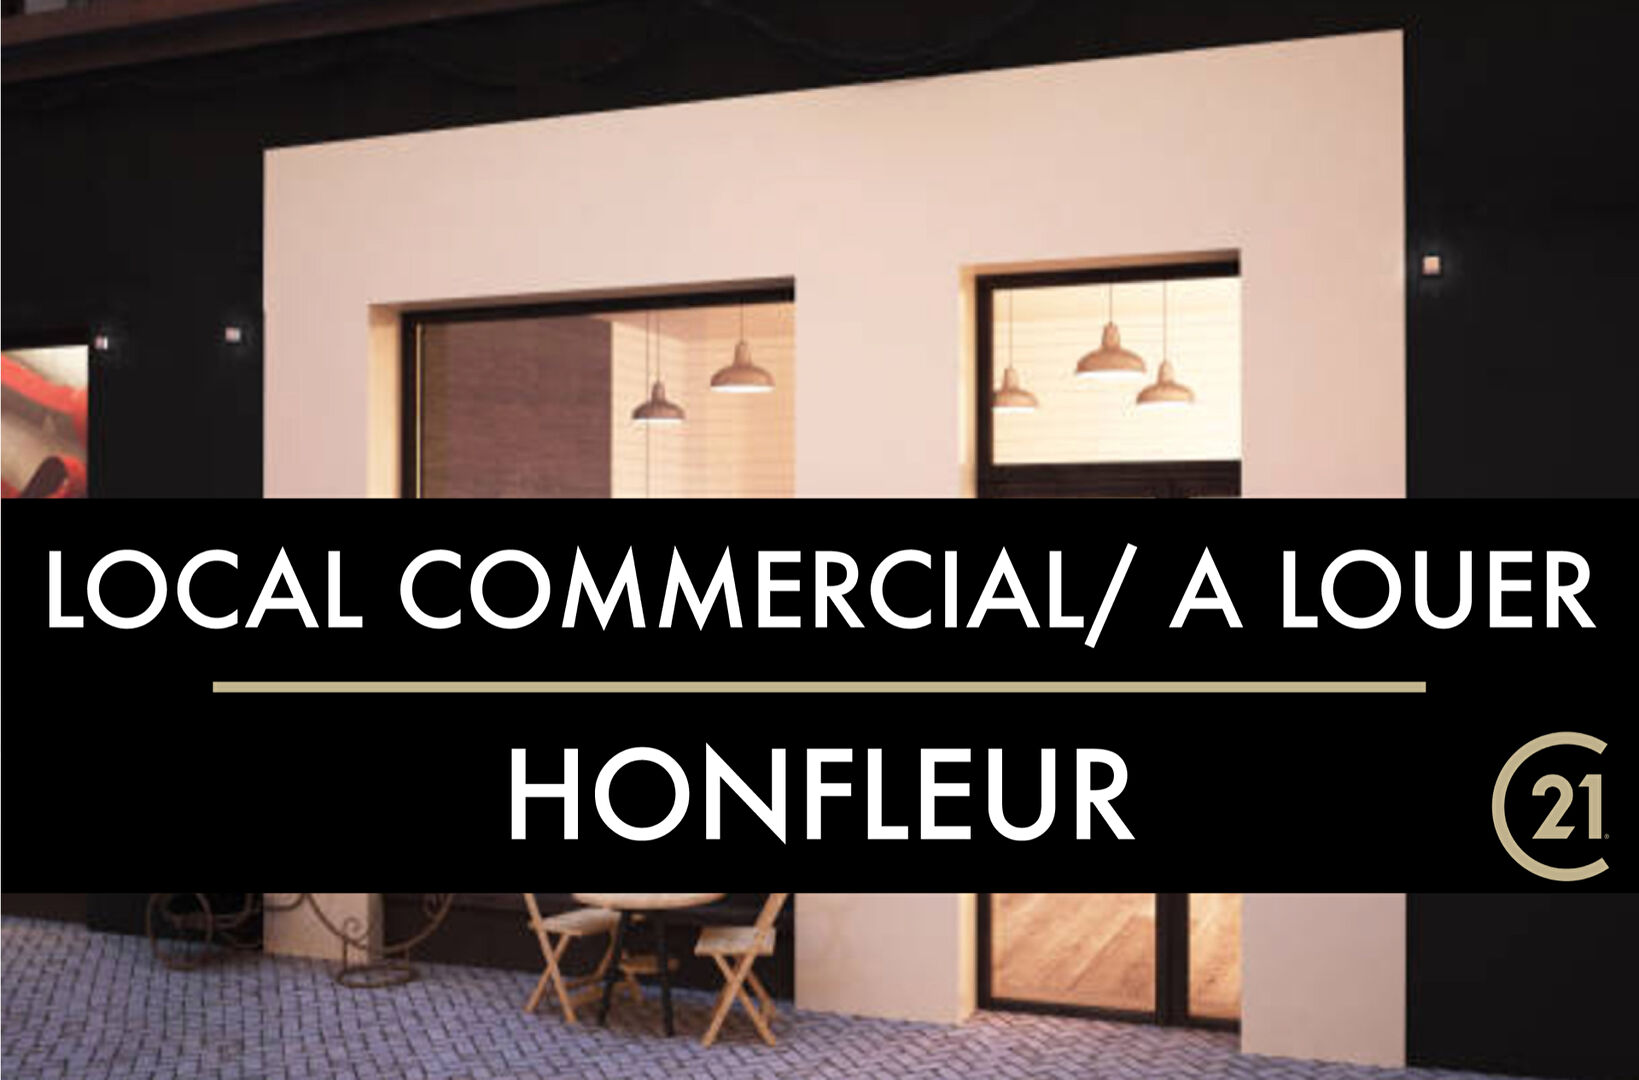 A LOUER – Local commercial Honfleur 130.61 m²